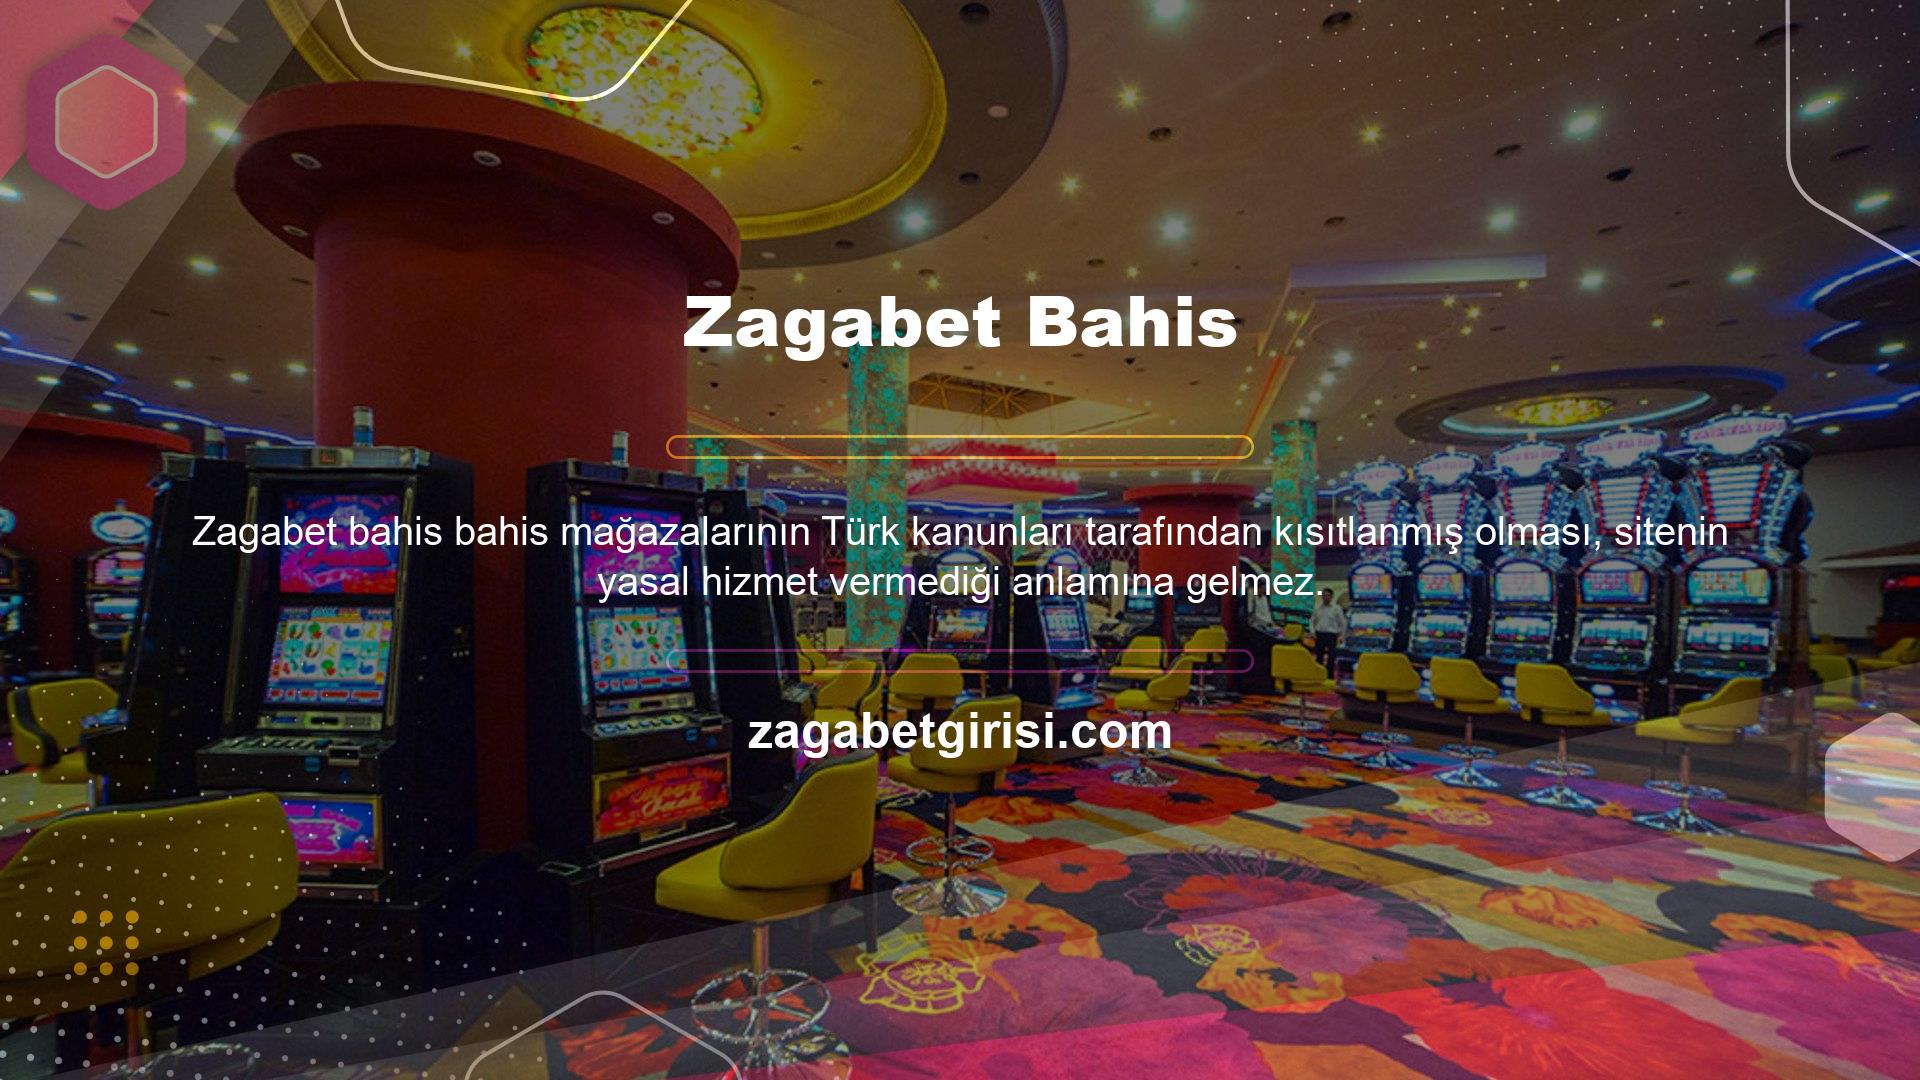 Zagabet lisanslı ve yasal bir web sitesidir